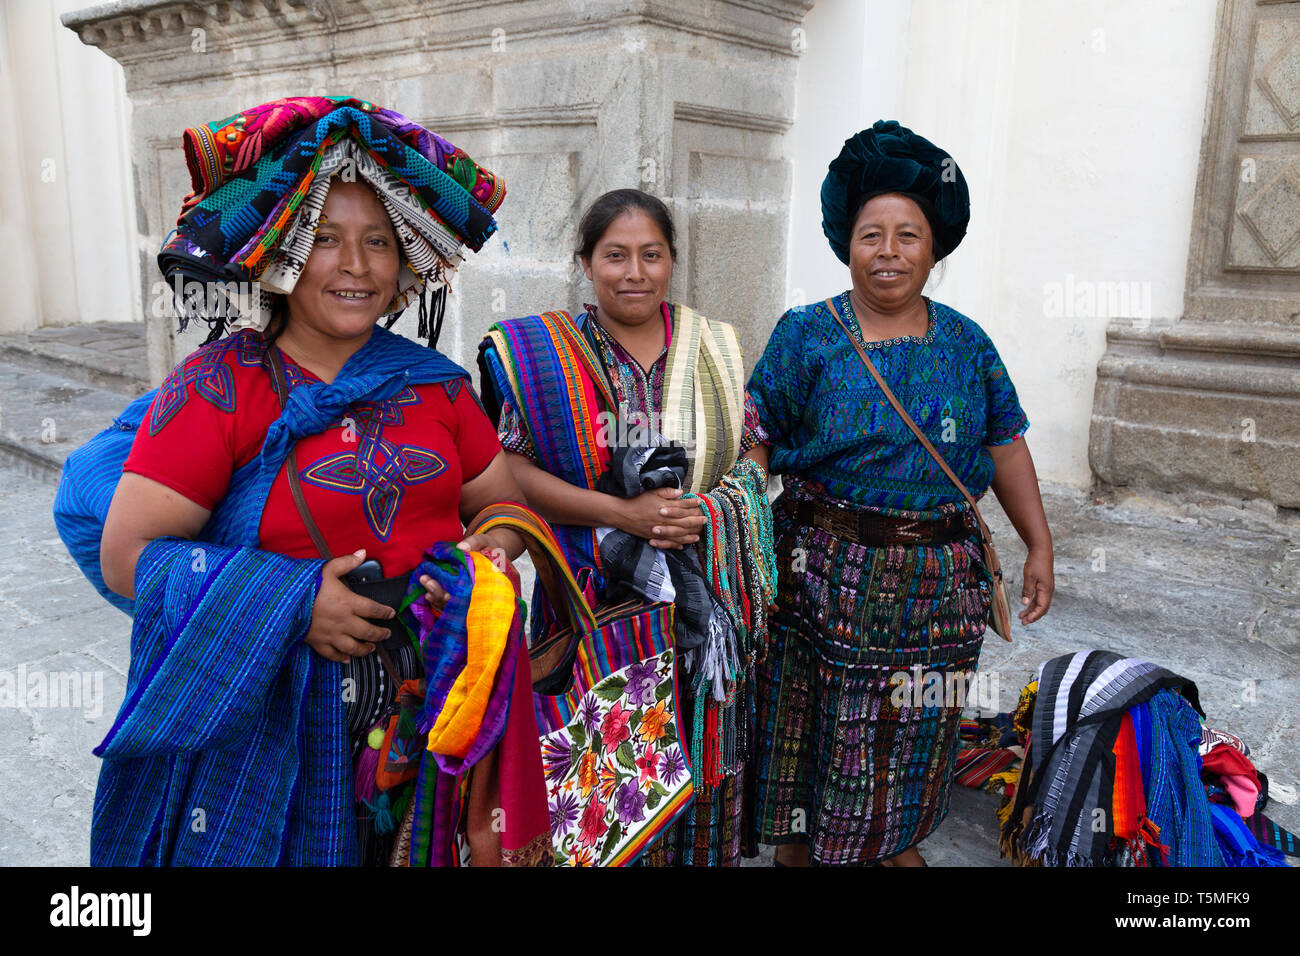 Guatemala Lifestyle Guatemala Frauen Verkauf Von Schals Und Textilien Auf Der Strasse Antigua Guatemala Mittelamerika Beispiel Fur Lateinamerika Kultur Stockfotografie Alamy